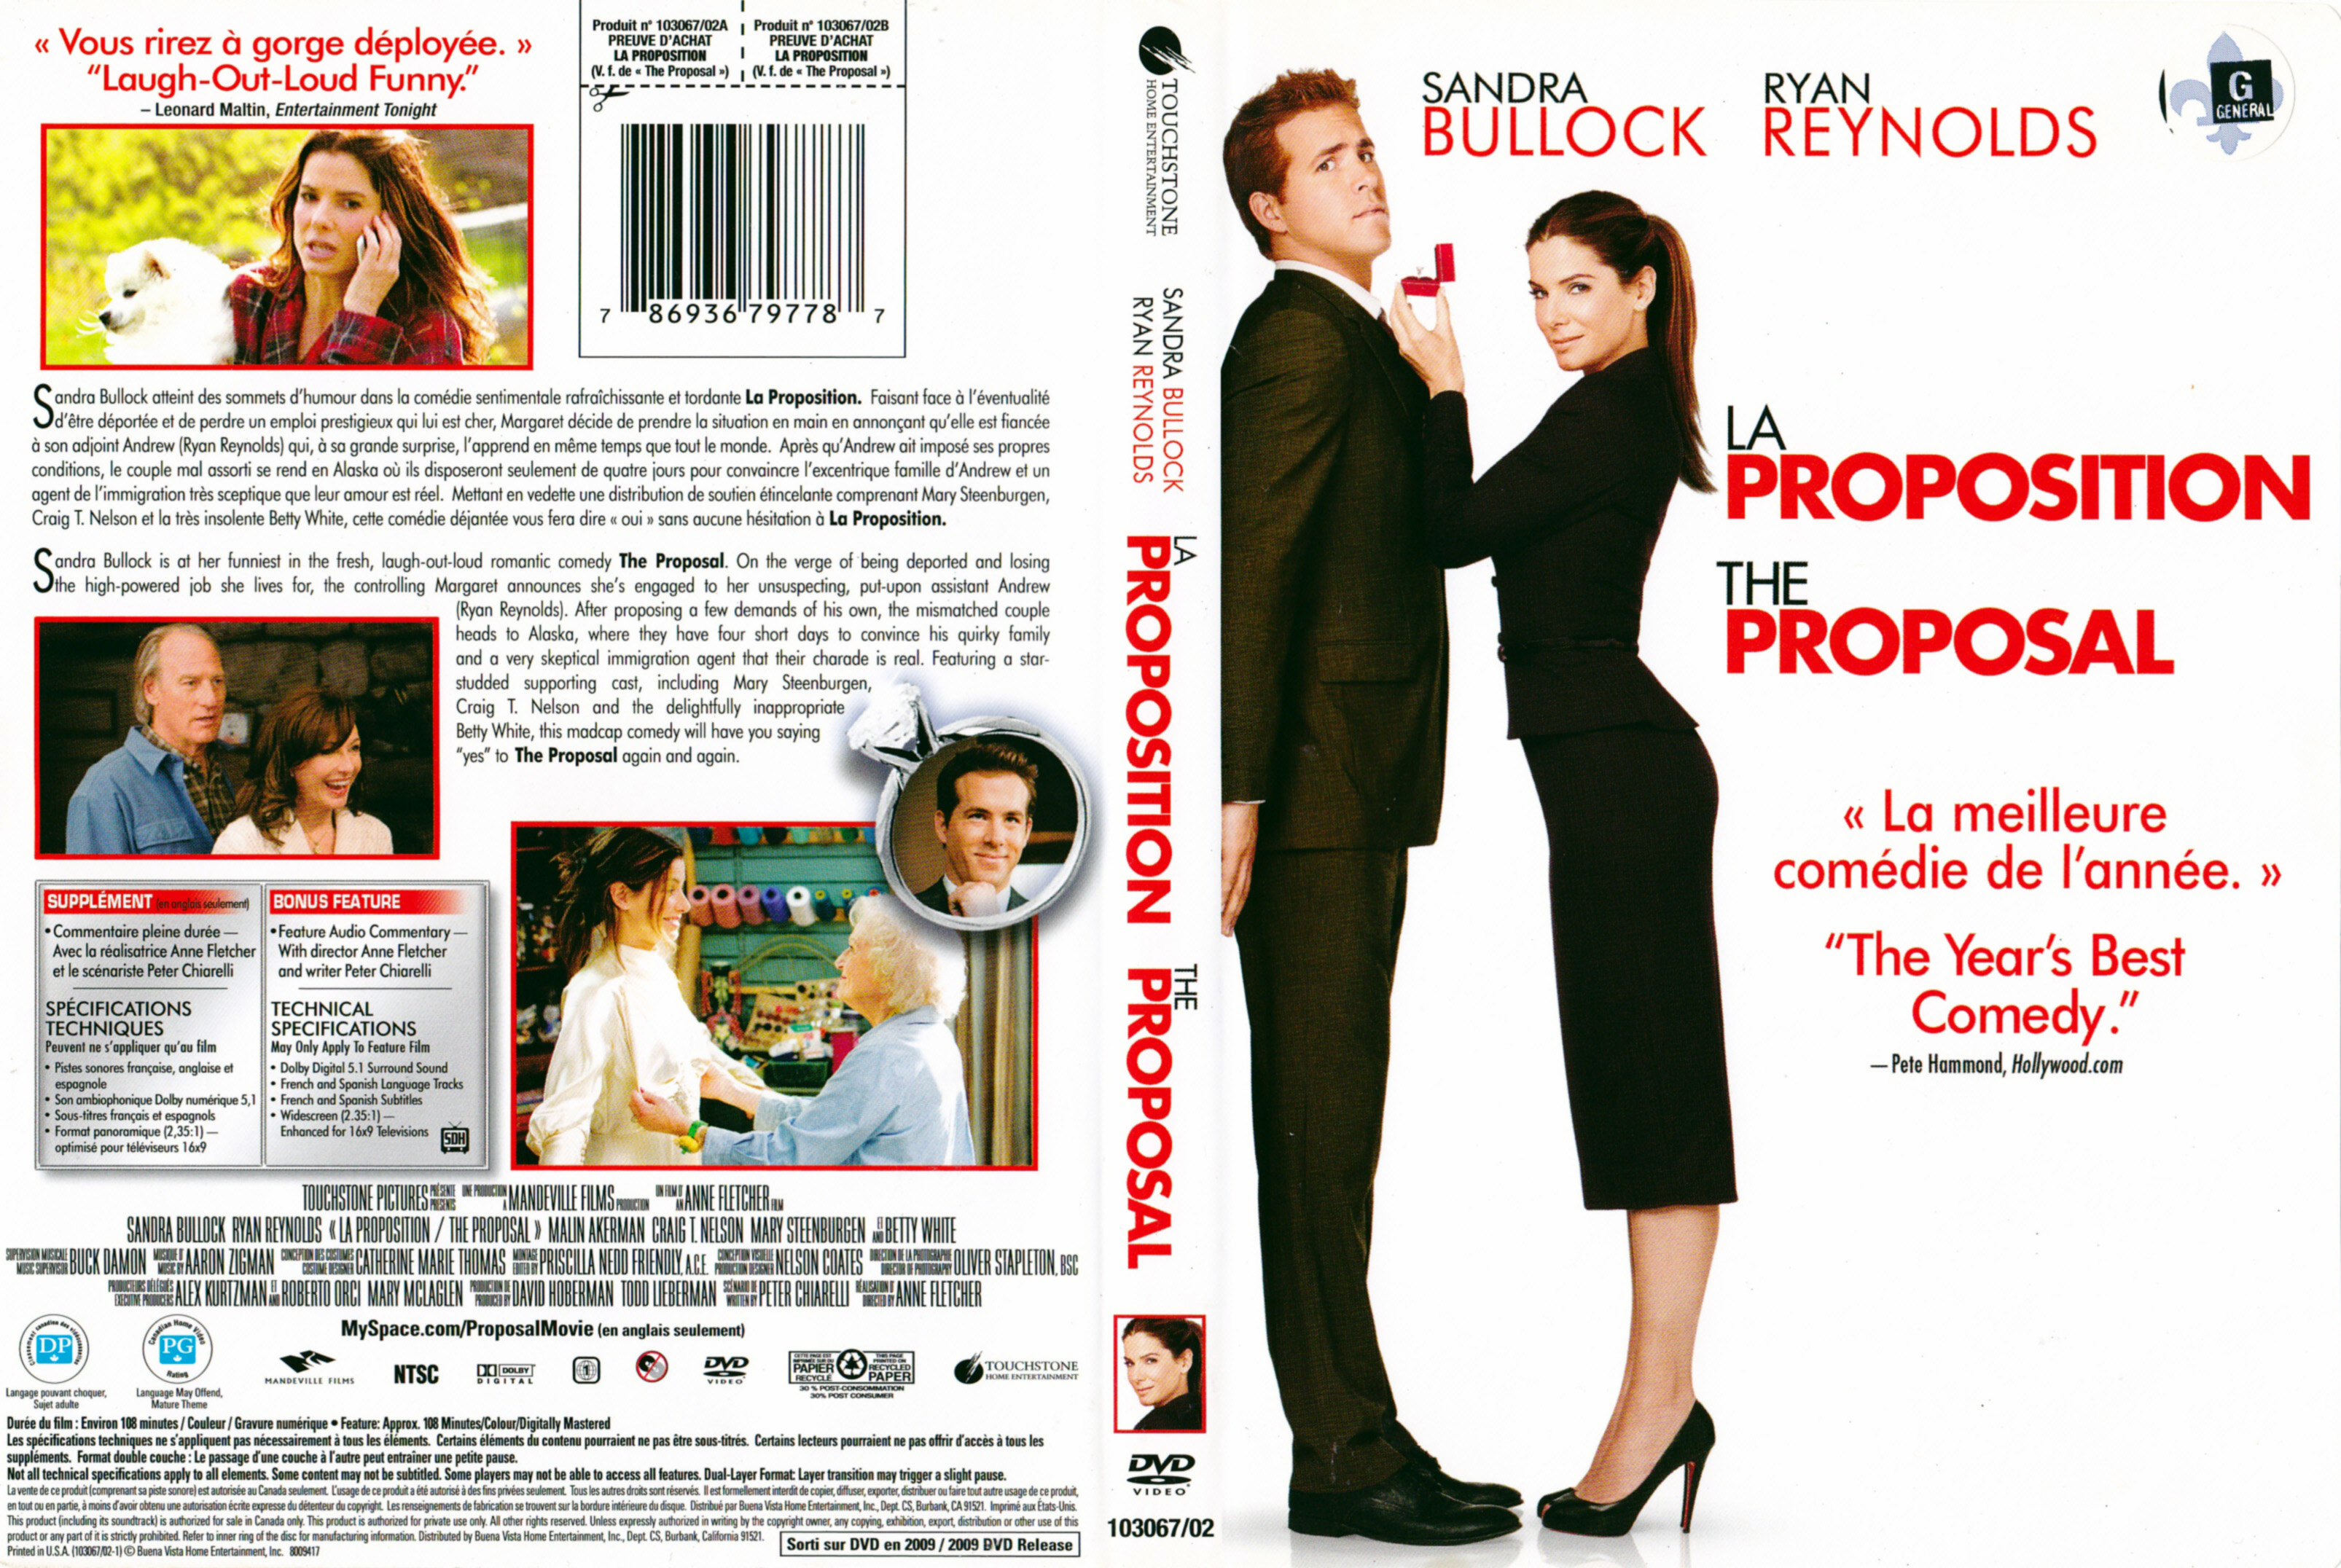 Jaquette DVD La proposition - The proposal (Canadienne)